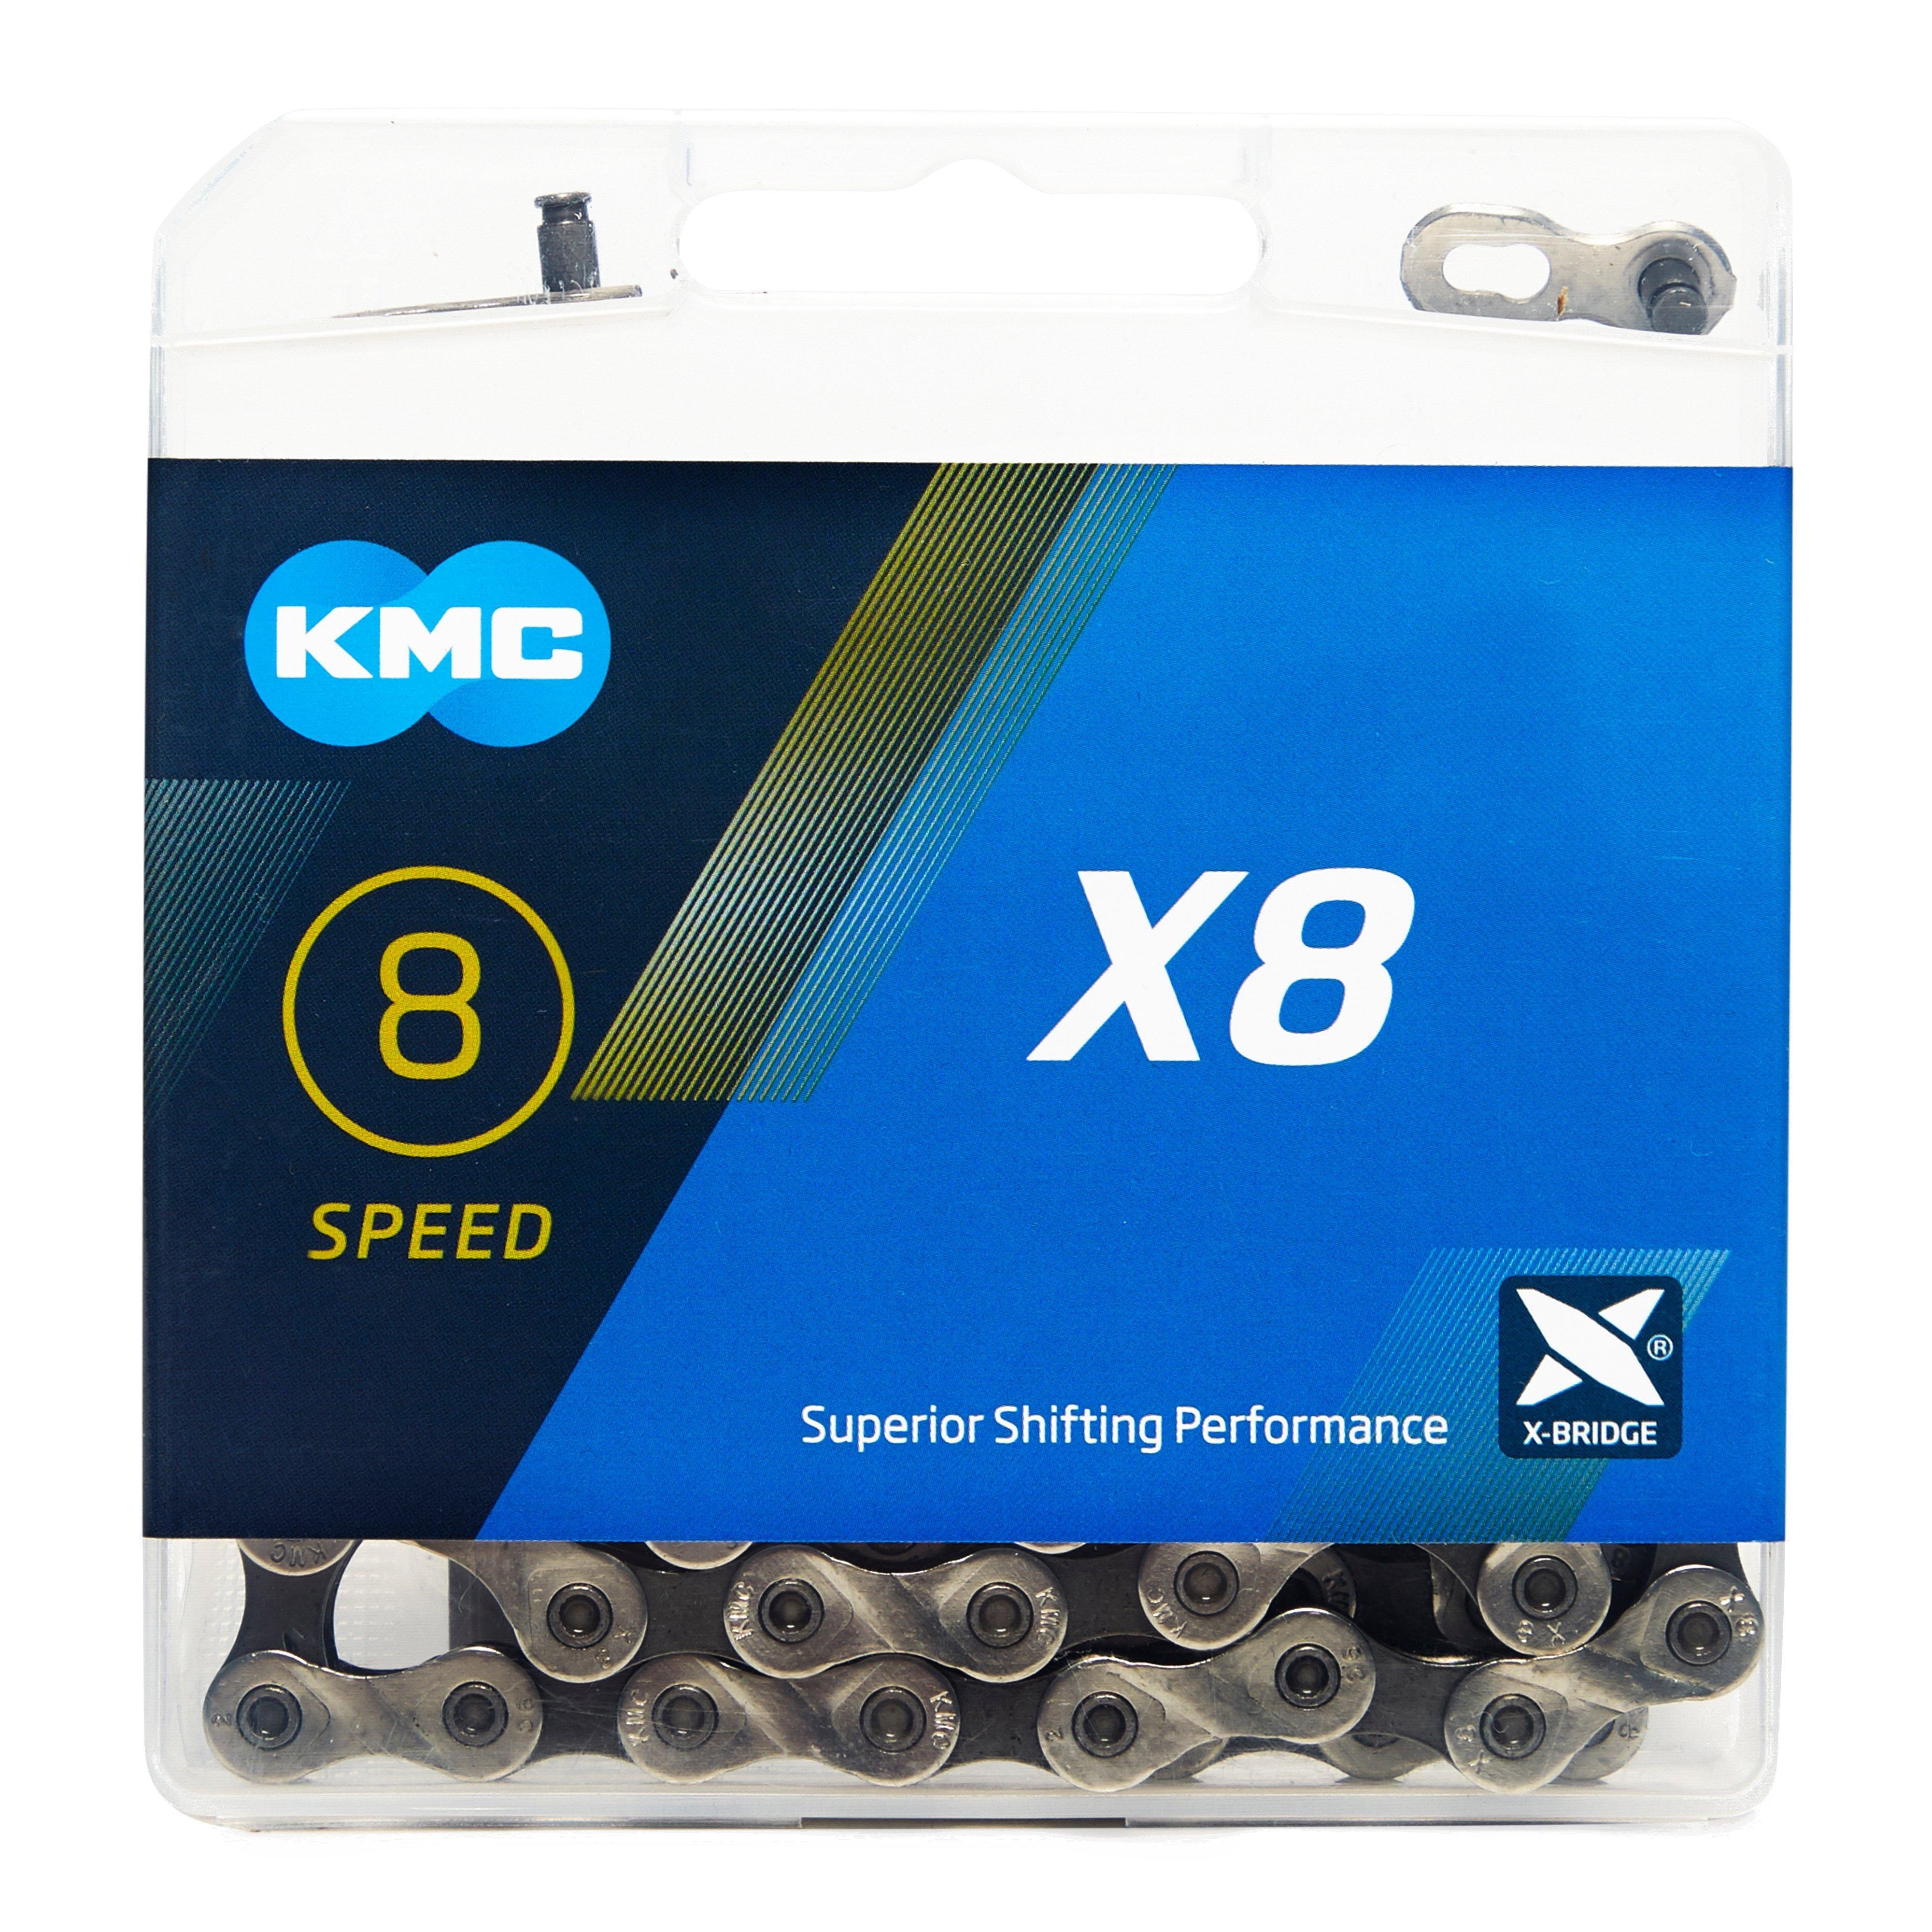 KMC Chains X8 MTB Bike Chain Review